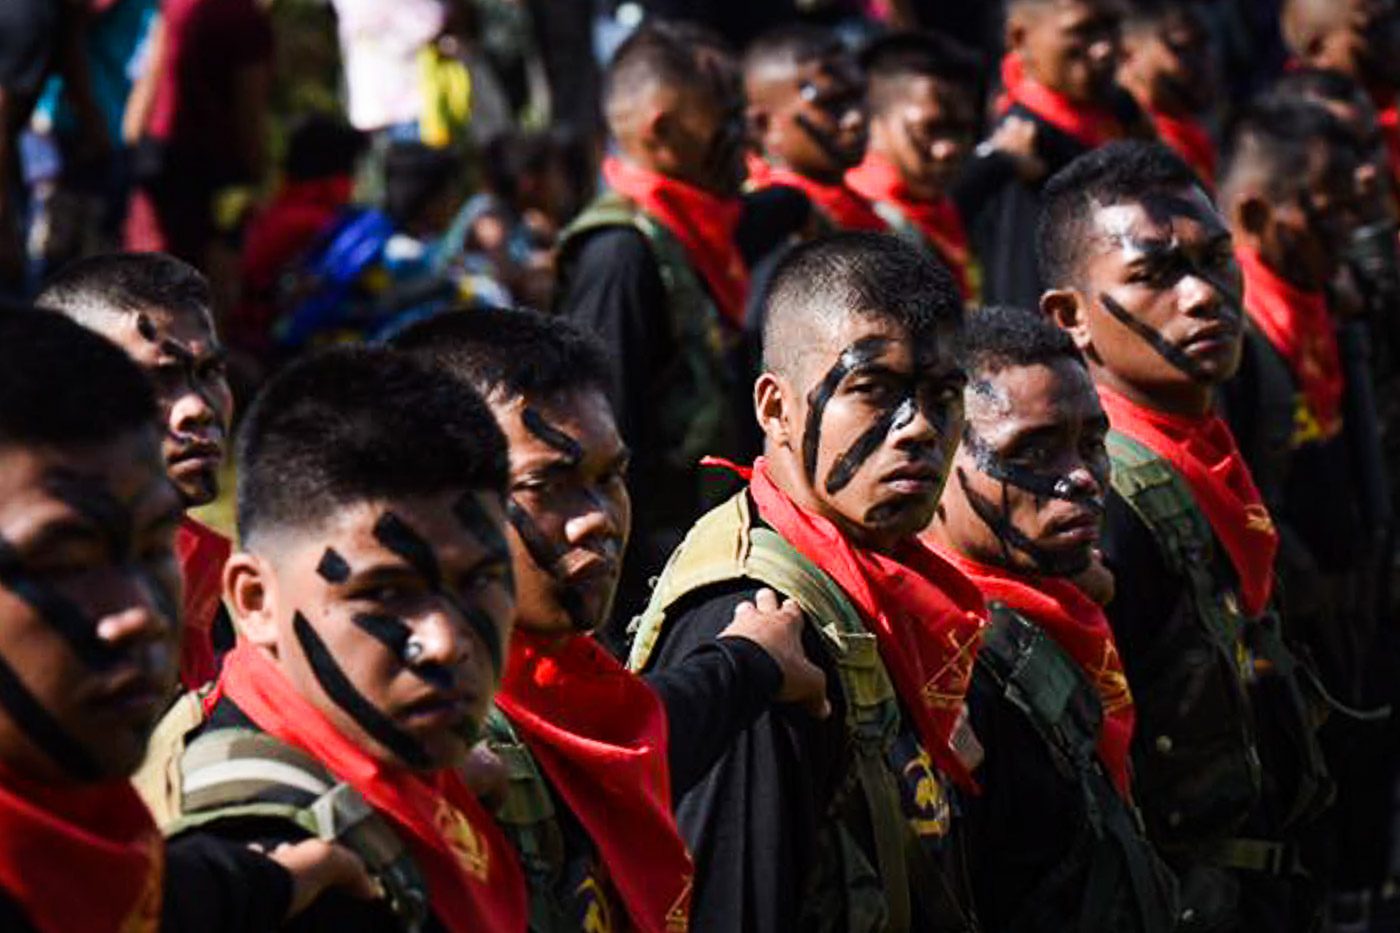 NPA takes 5 soldiers as ‘prisoners of war’